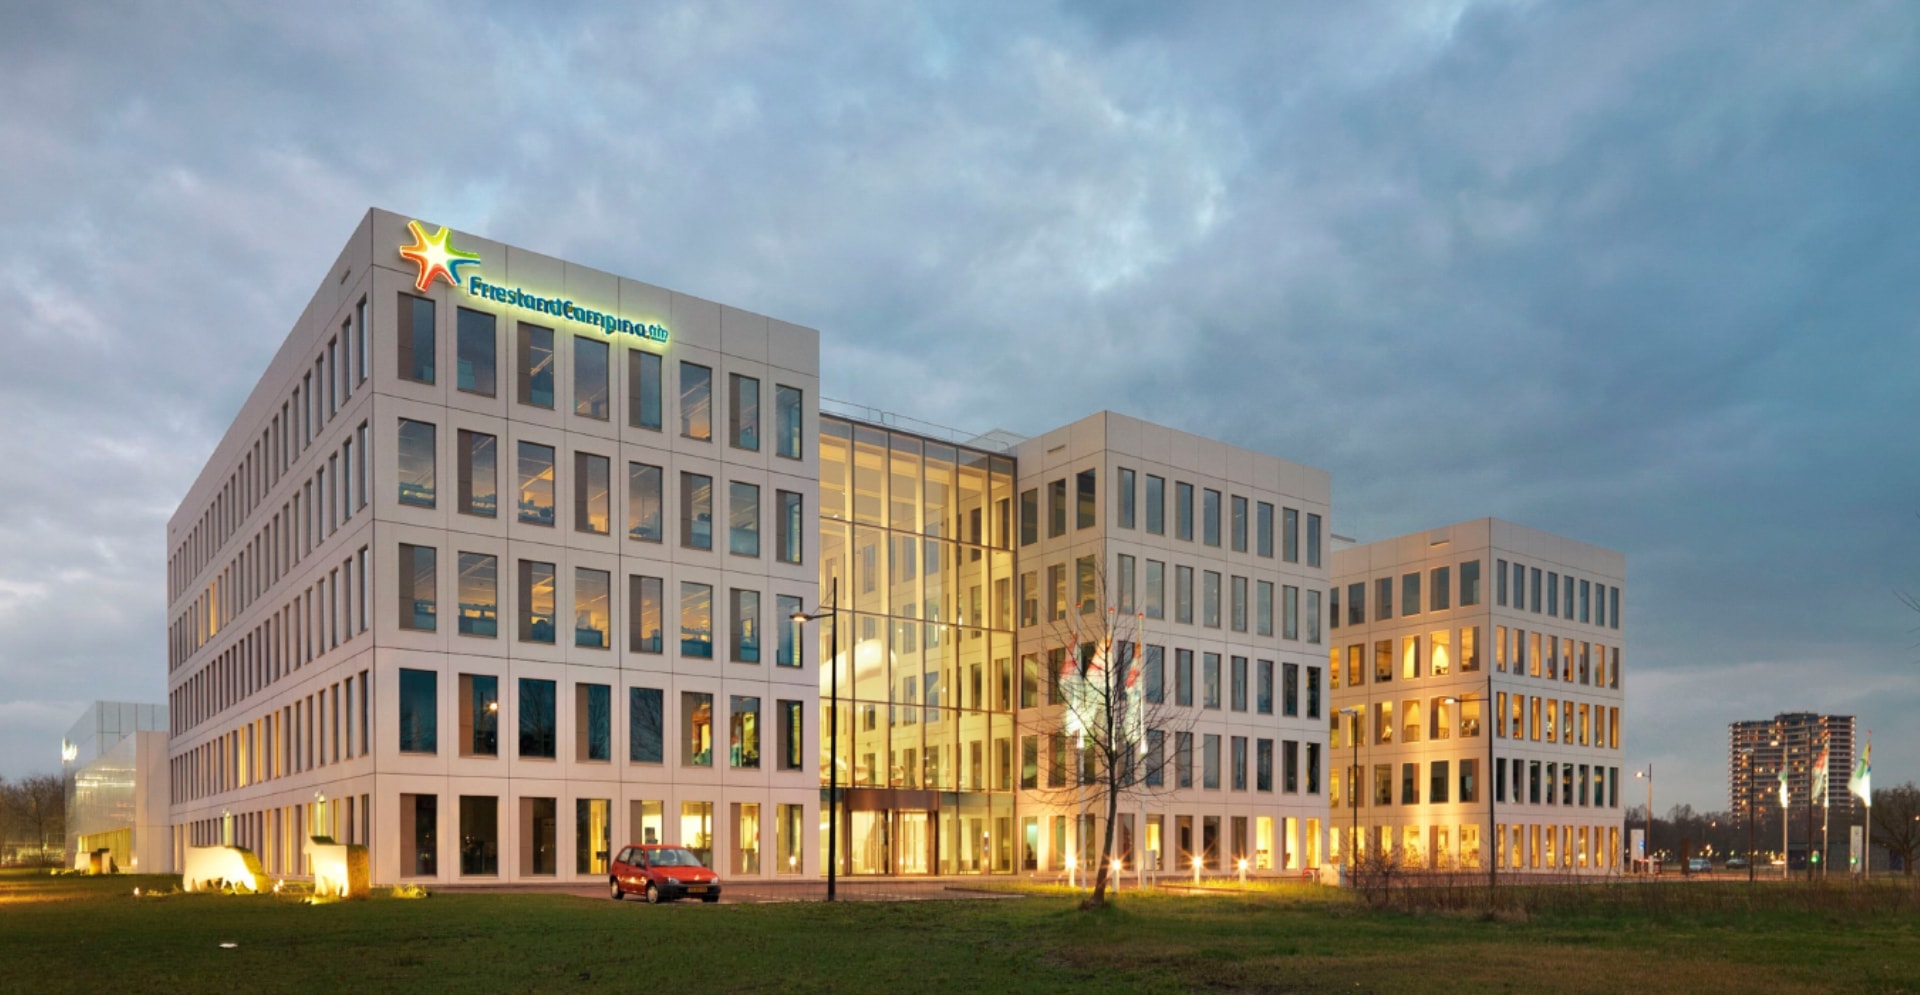 Aanzicht van het nieuwe innovatie centrum van FrieslandCampina in Wageningen bij zonsondergang